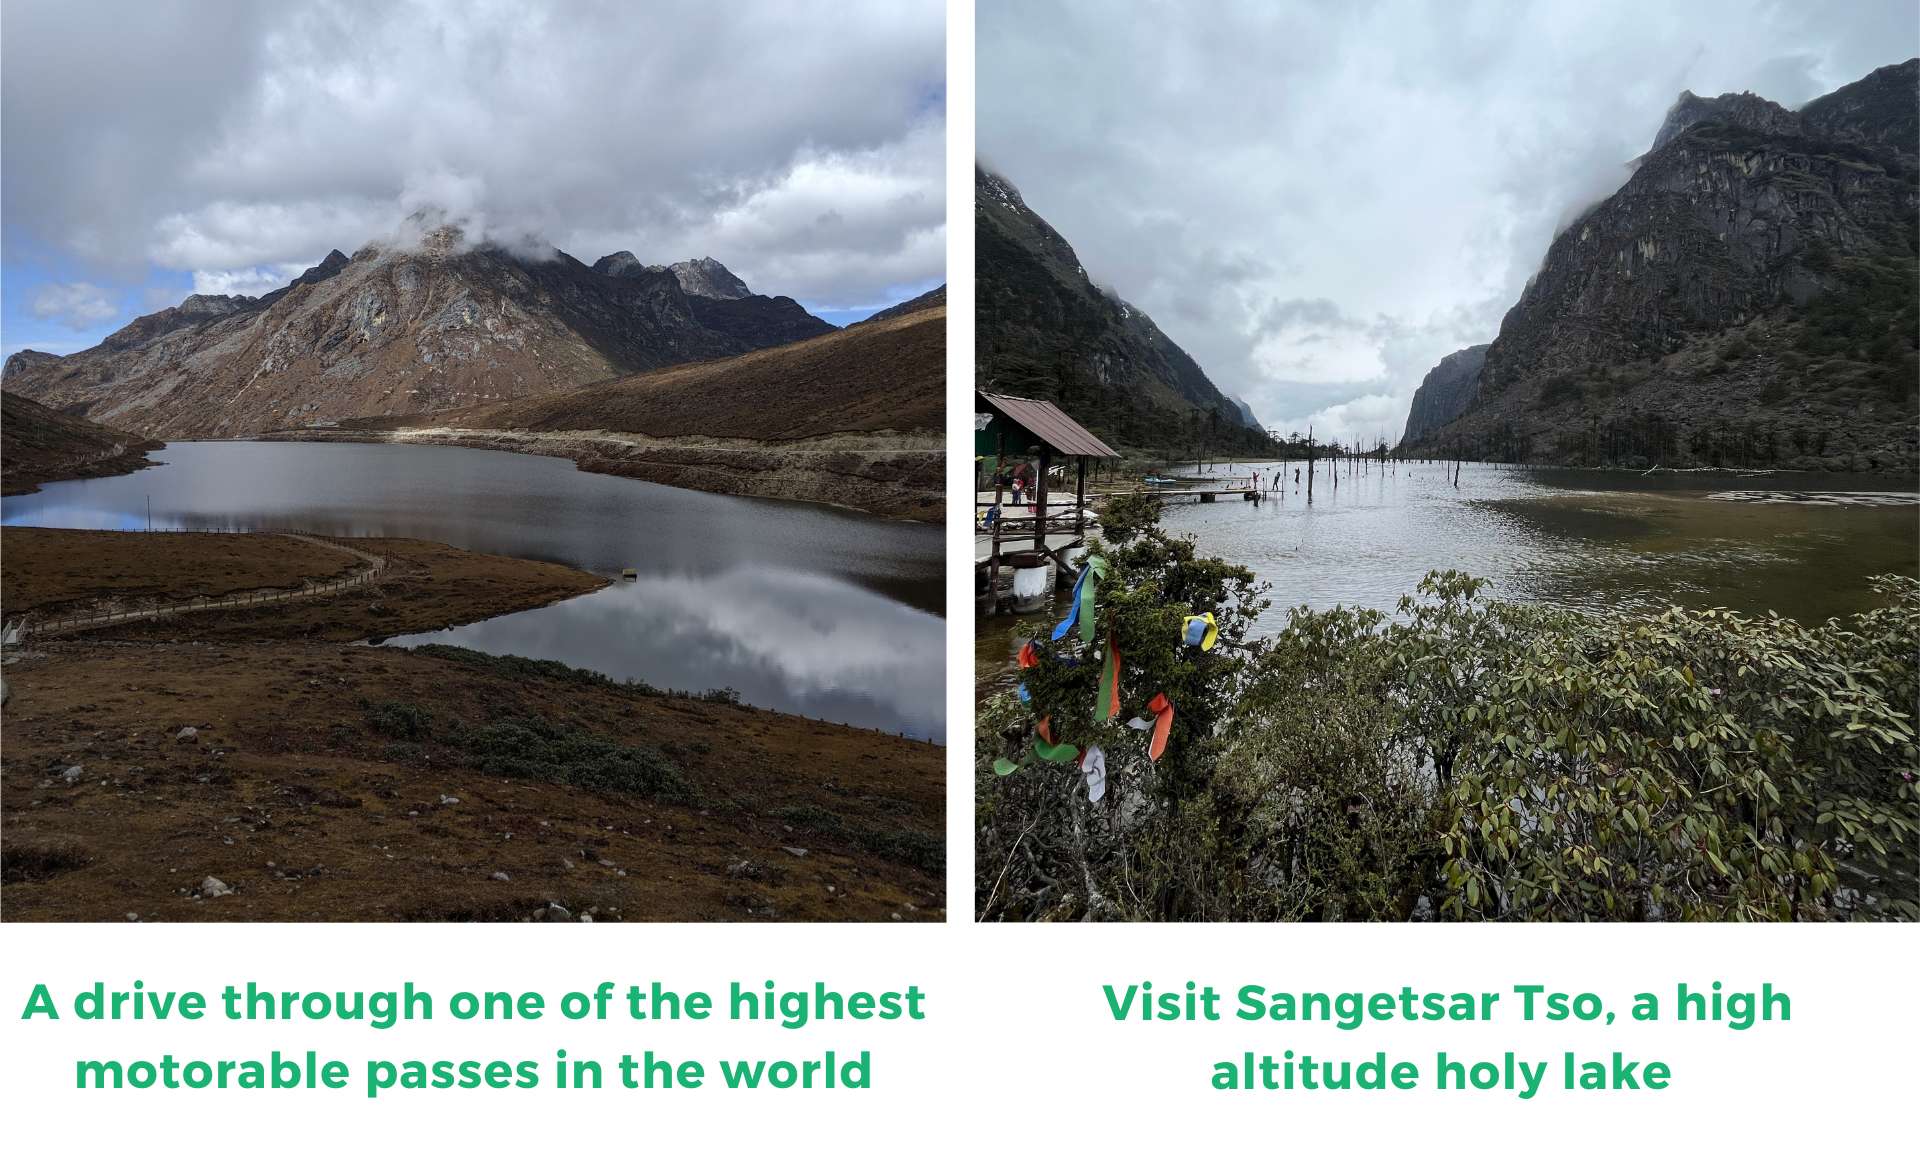 Visit Sangetsar Tso, a high altitude holy lake